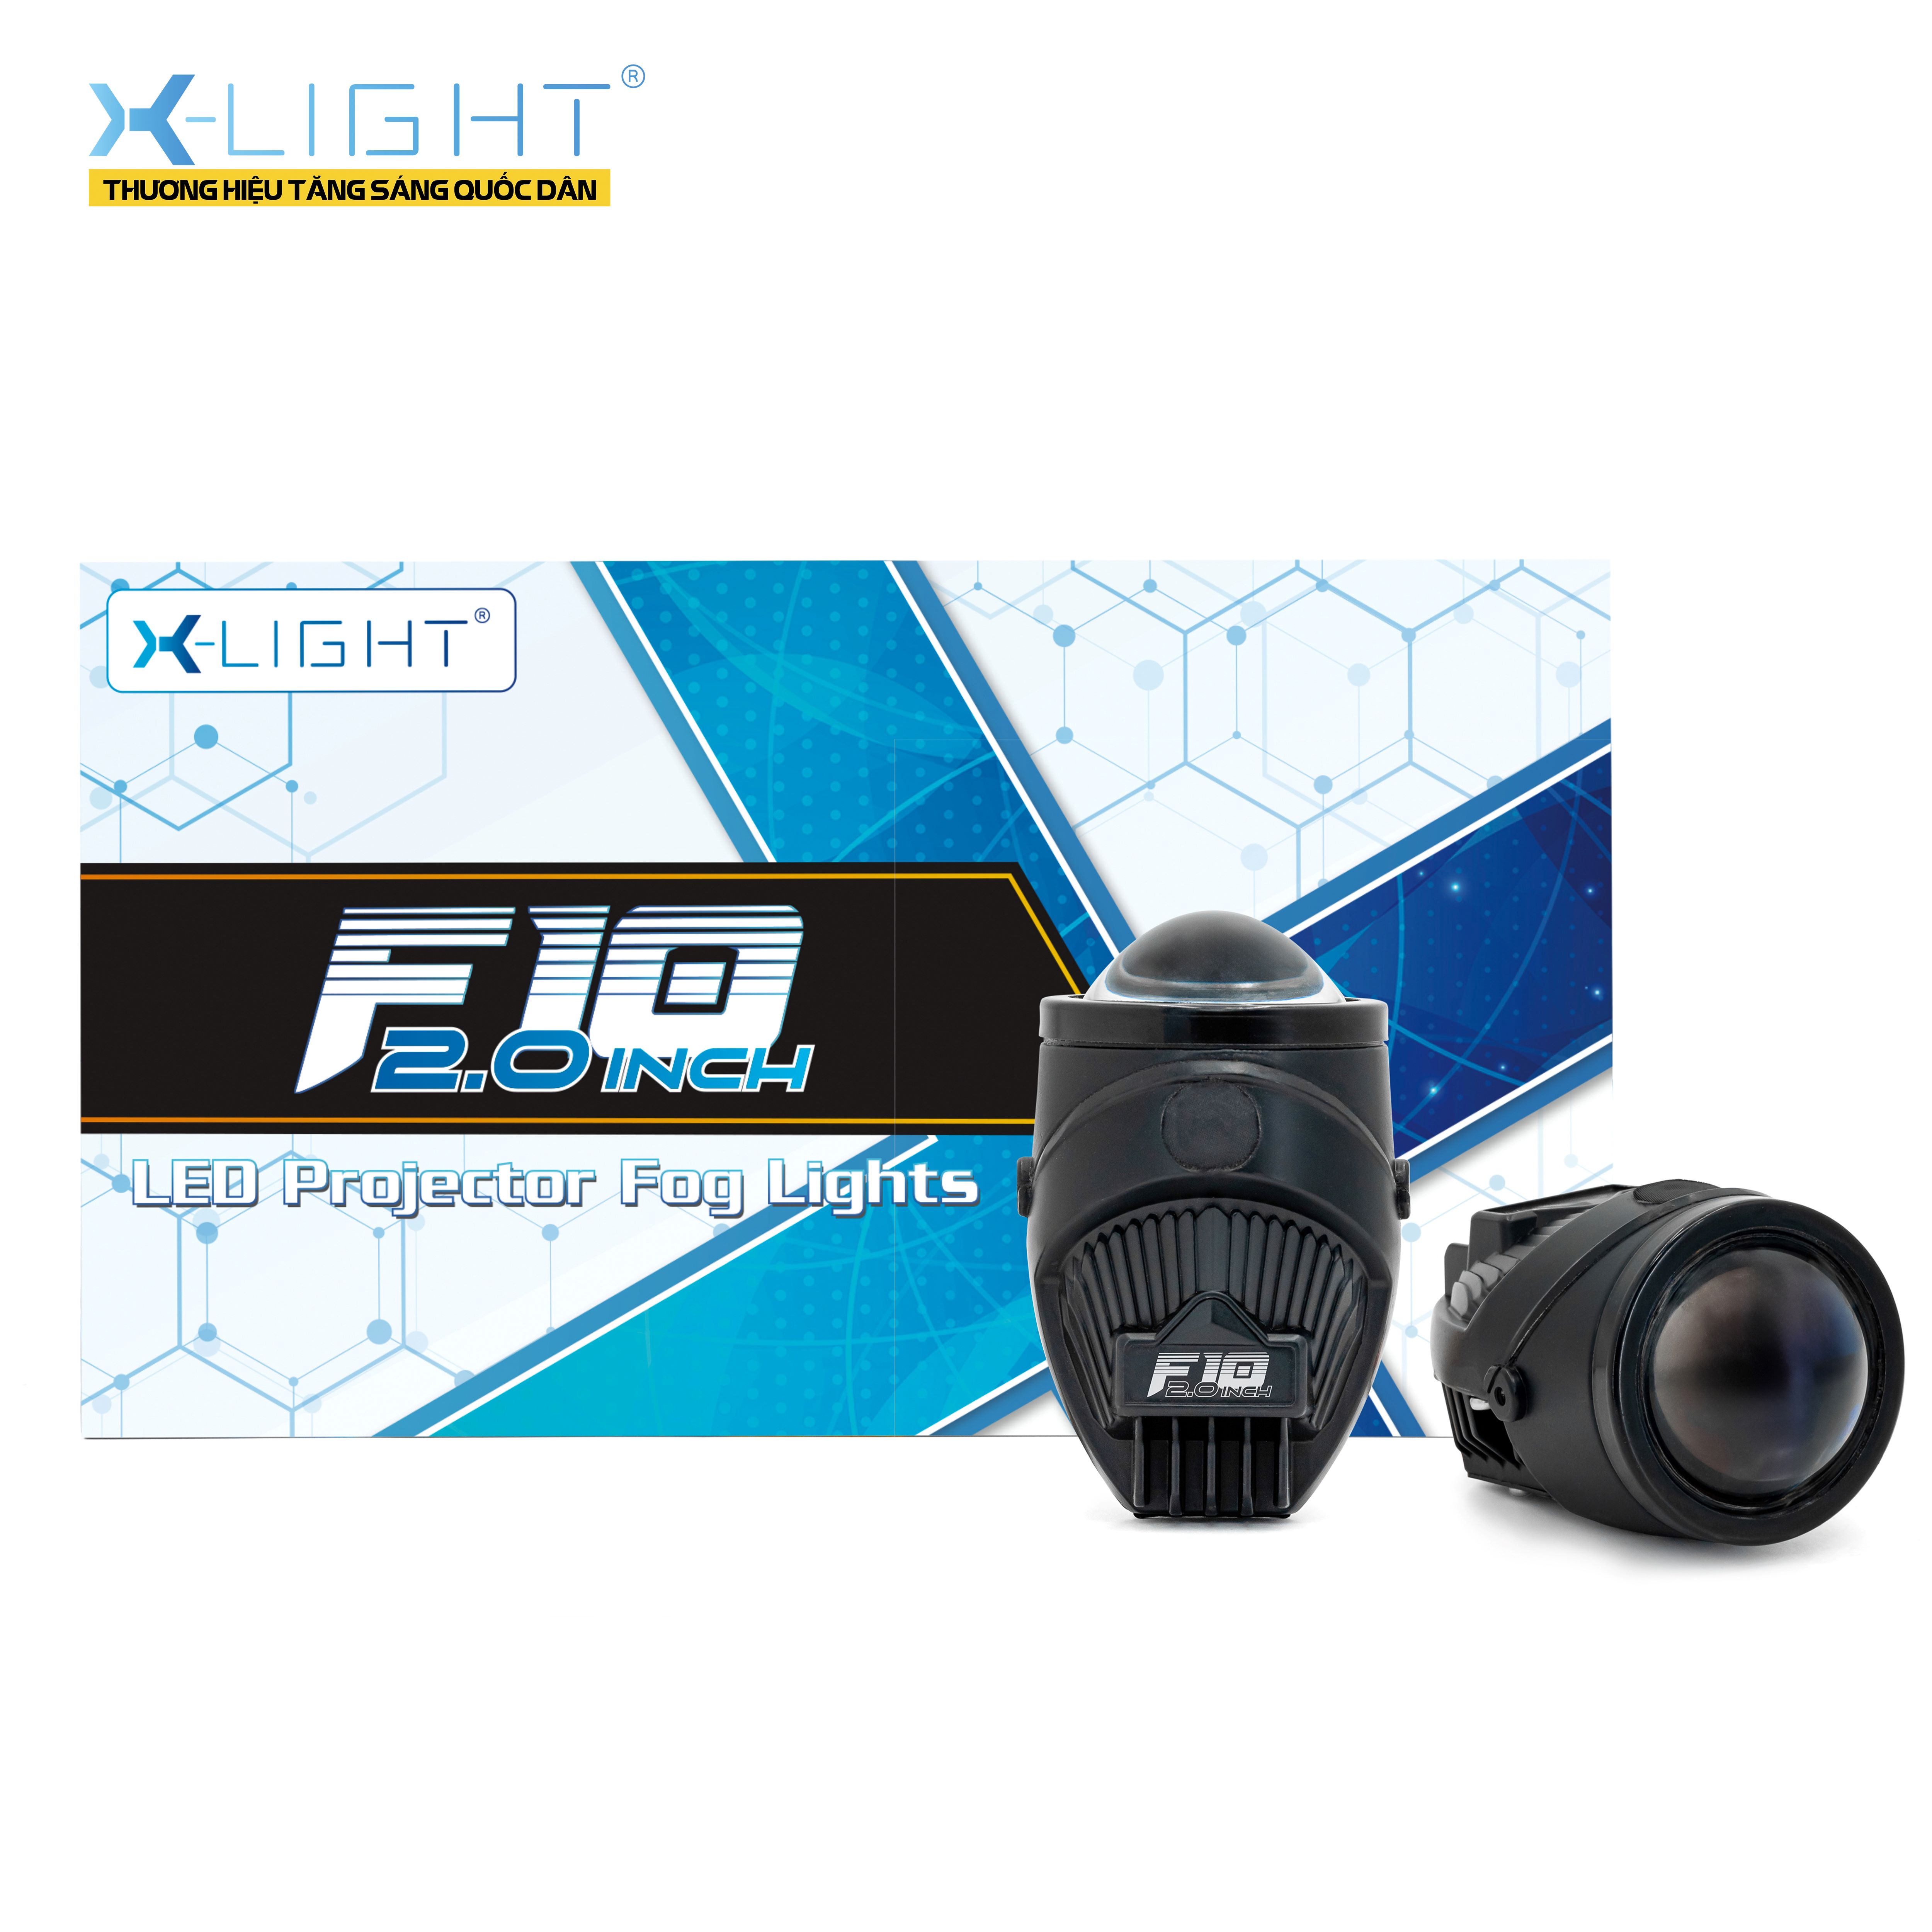 BI GẦM X-LIGHT F10 2.0 INCH